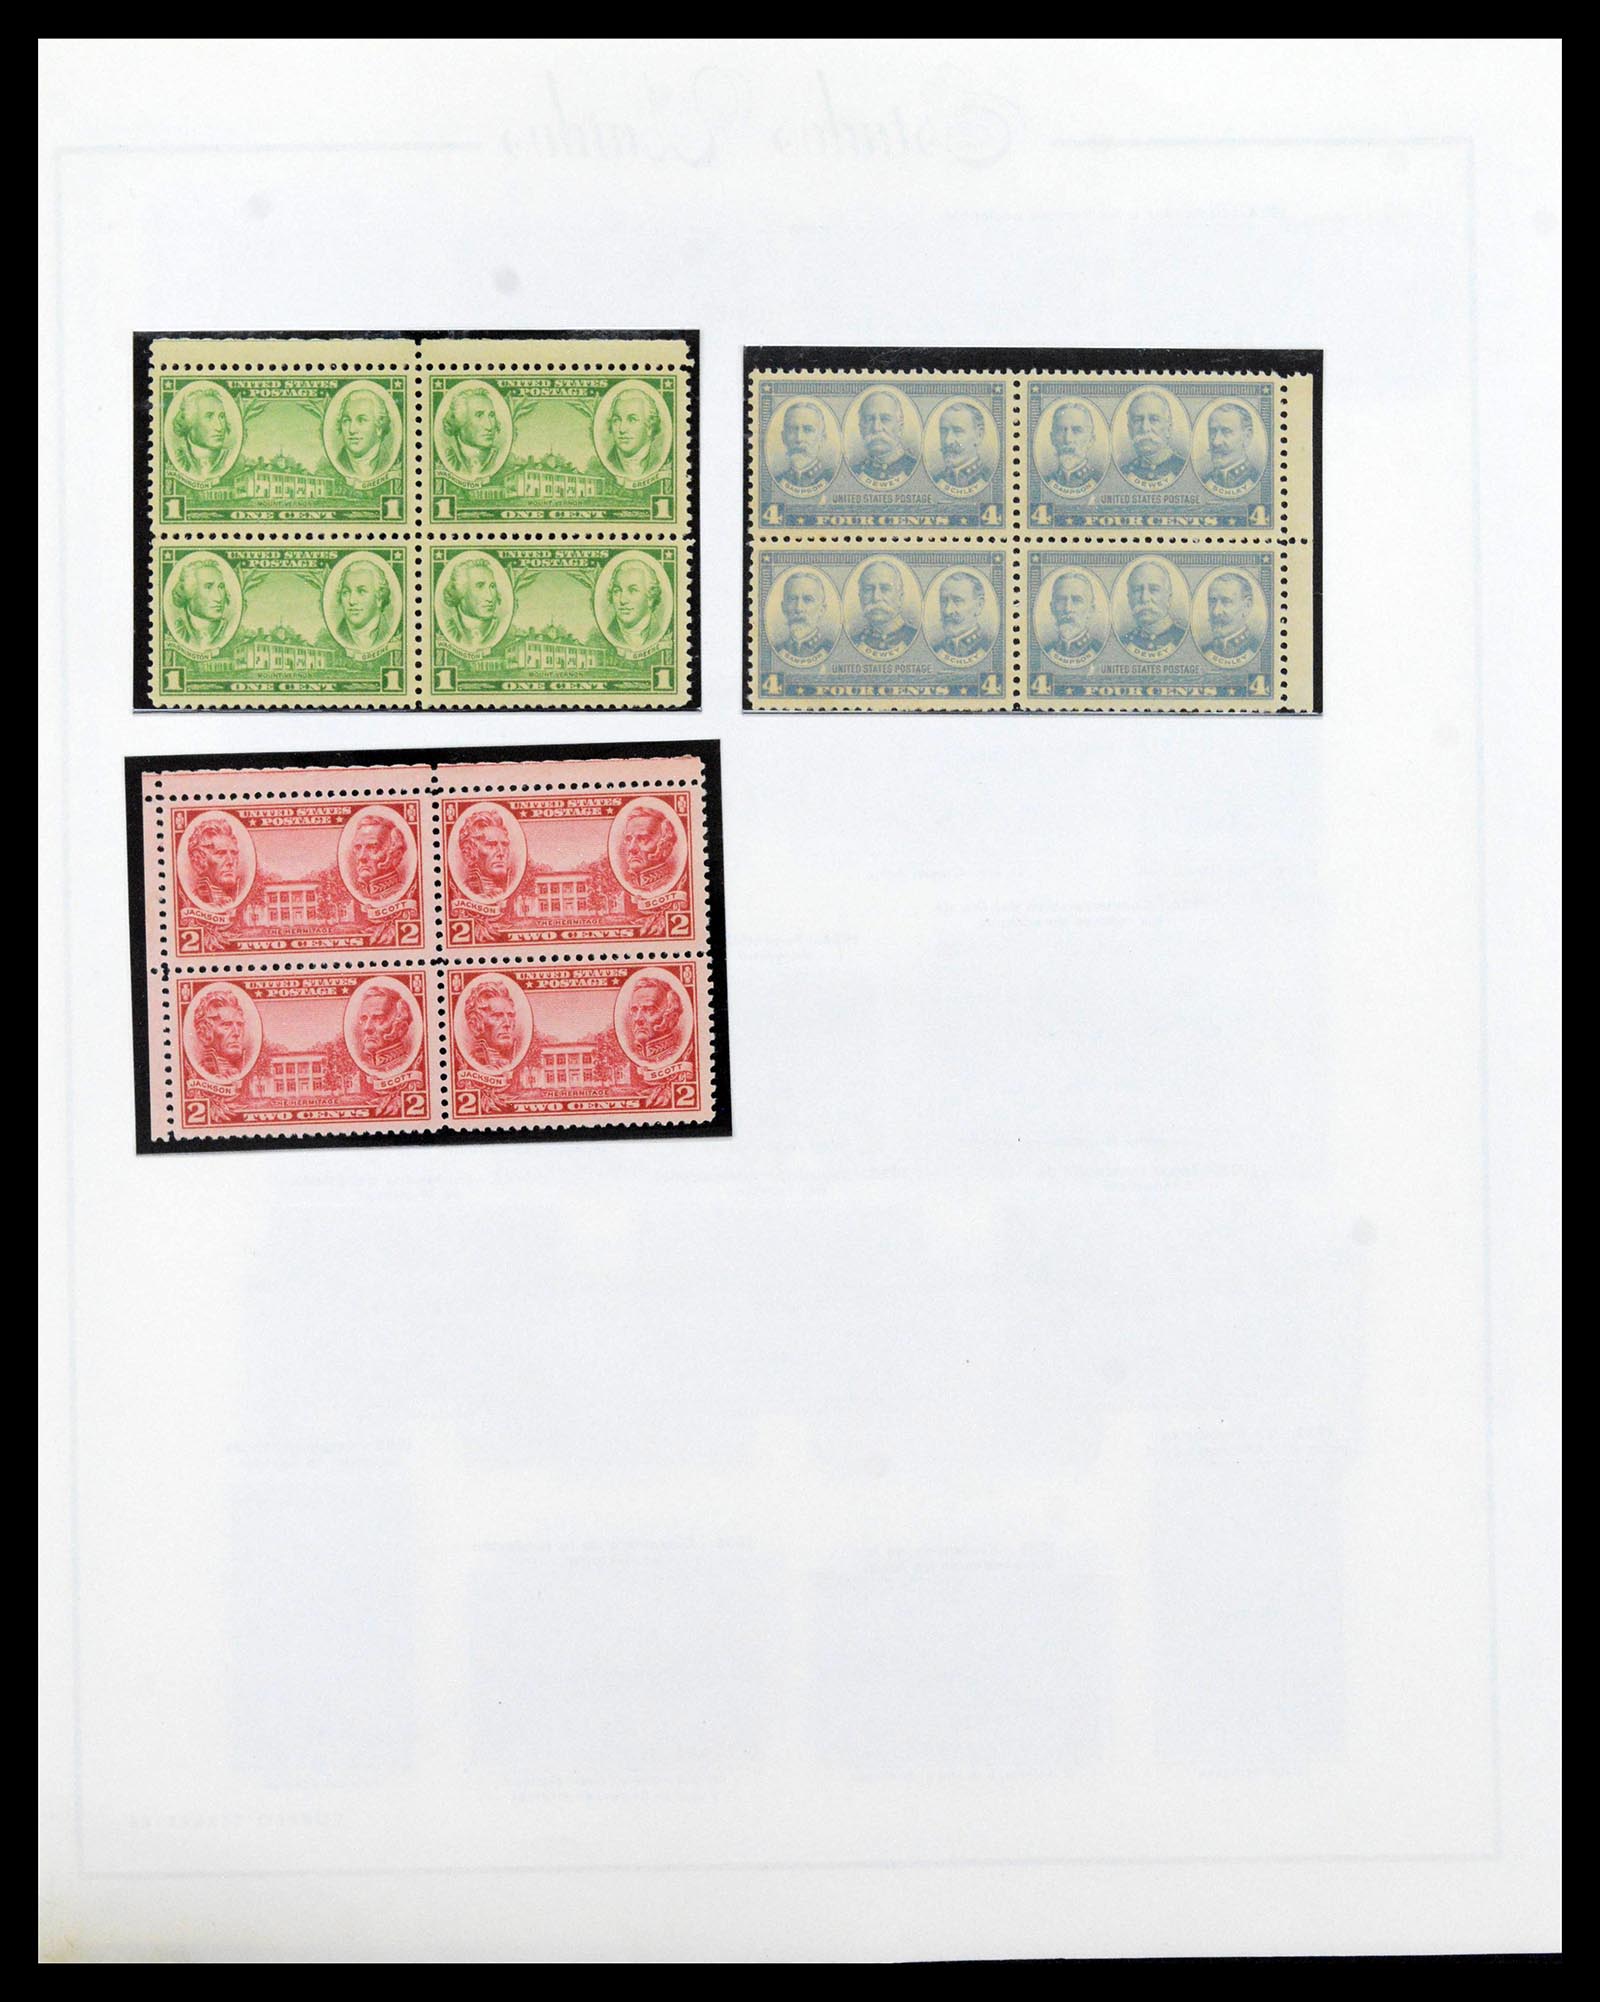 39190 0019 - Stamp collection 39190 USA 1851-1975.